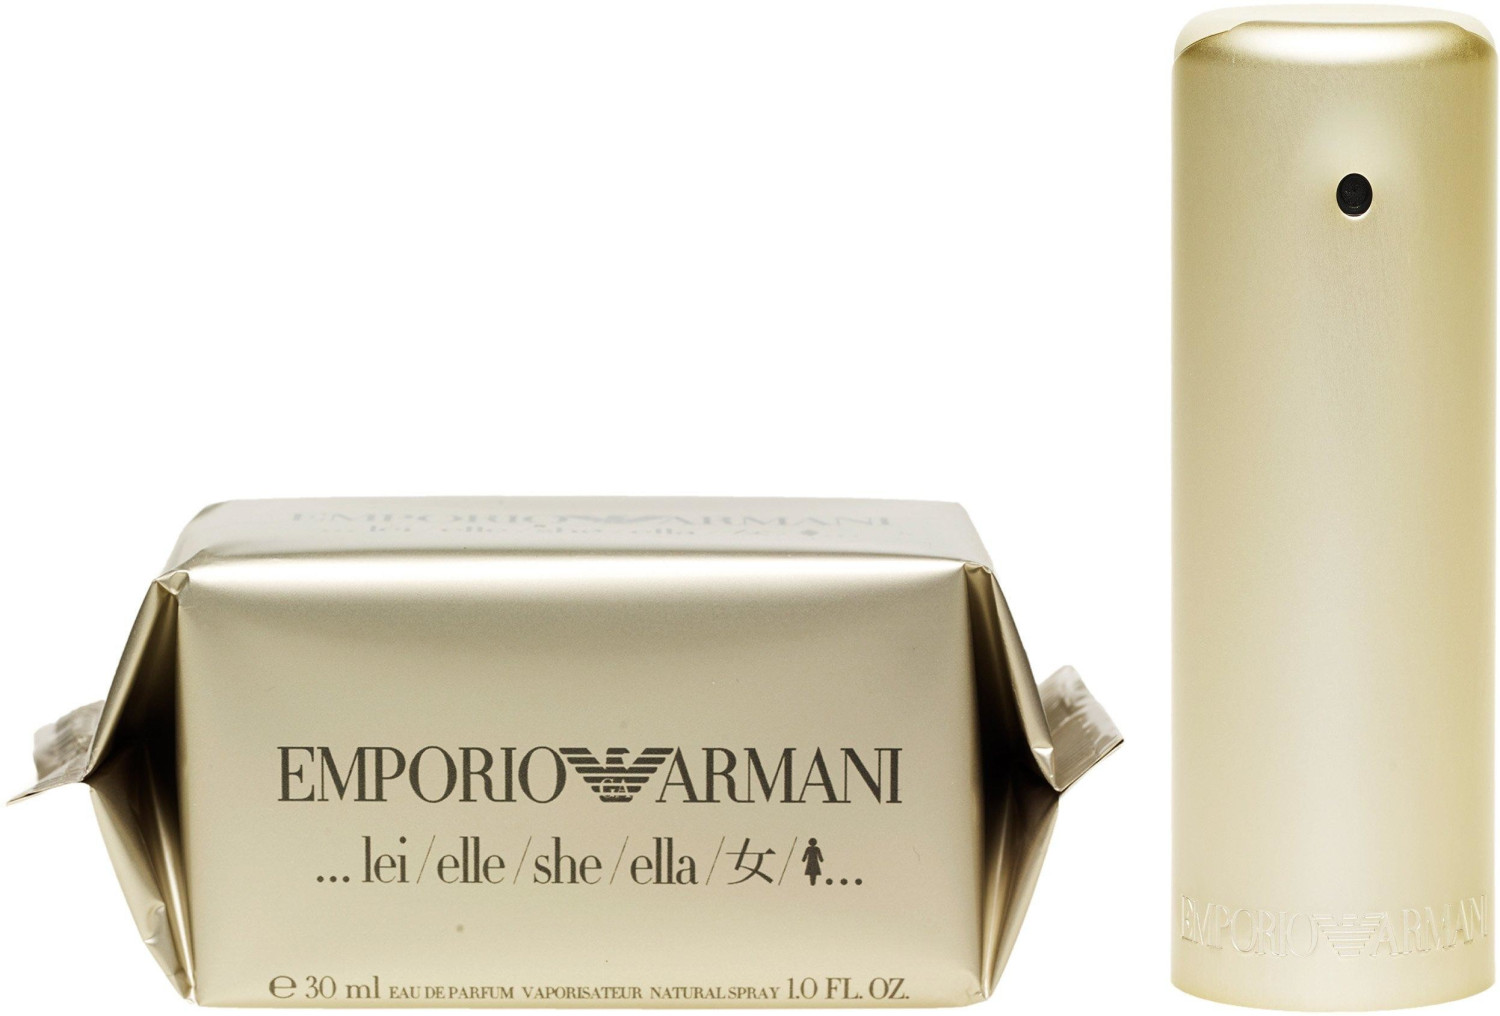 Photos - Women's Fragrance Armani Giorgio  Giorgio  Emporio  She Eau de Parfum  (30ml)